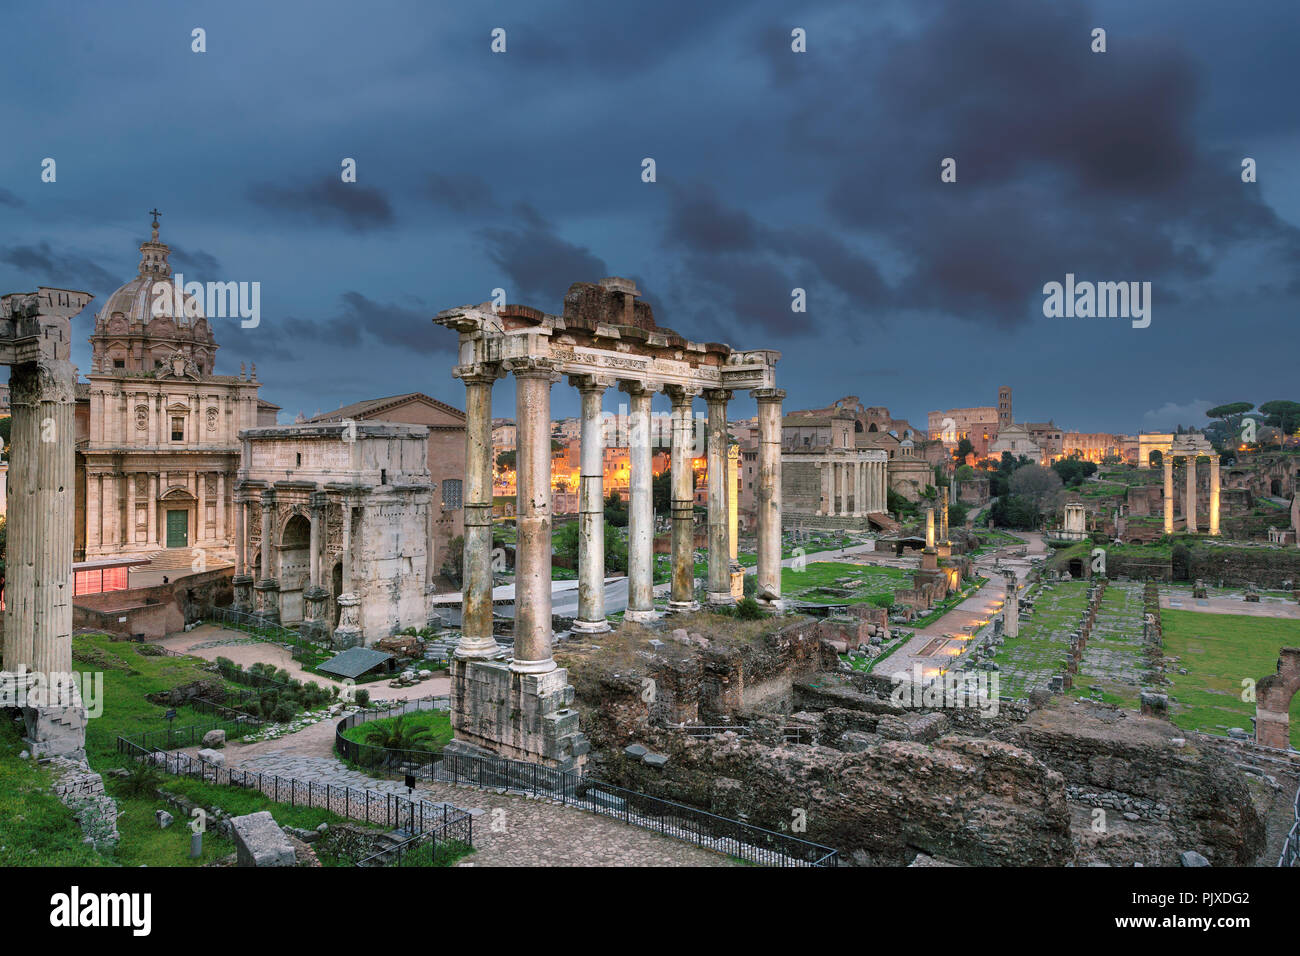 Forum romain dans crépuscule, Rome, Italie. Banque D'Images